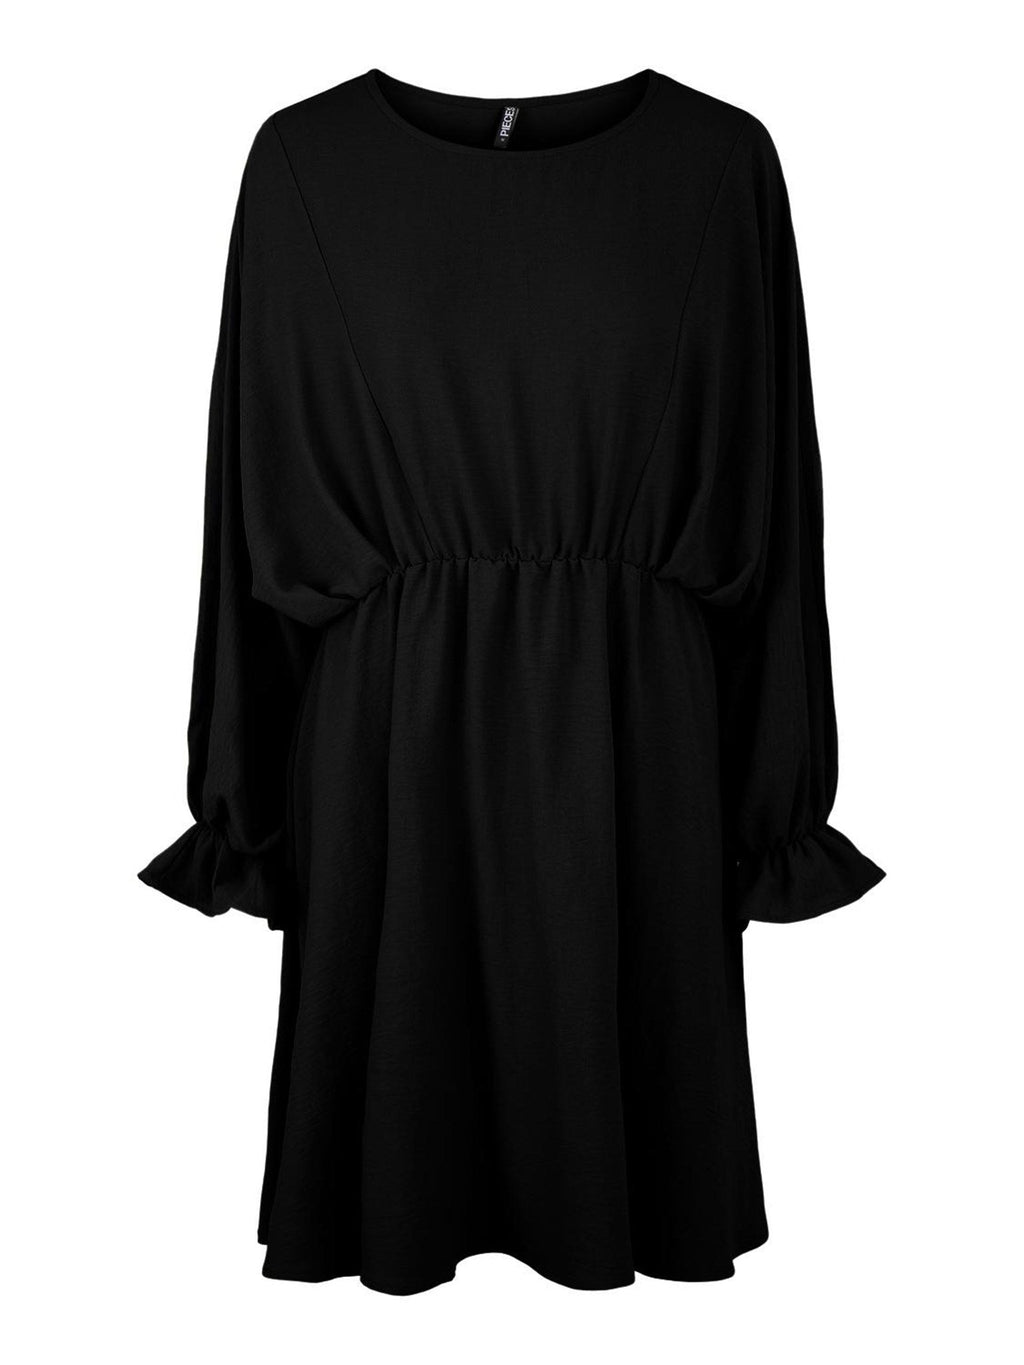 Φόρεμα με μακριά μανίκια - μαύρο